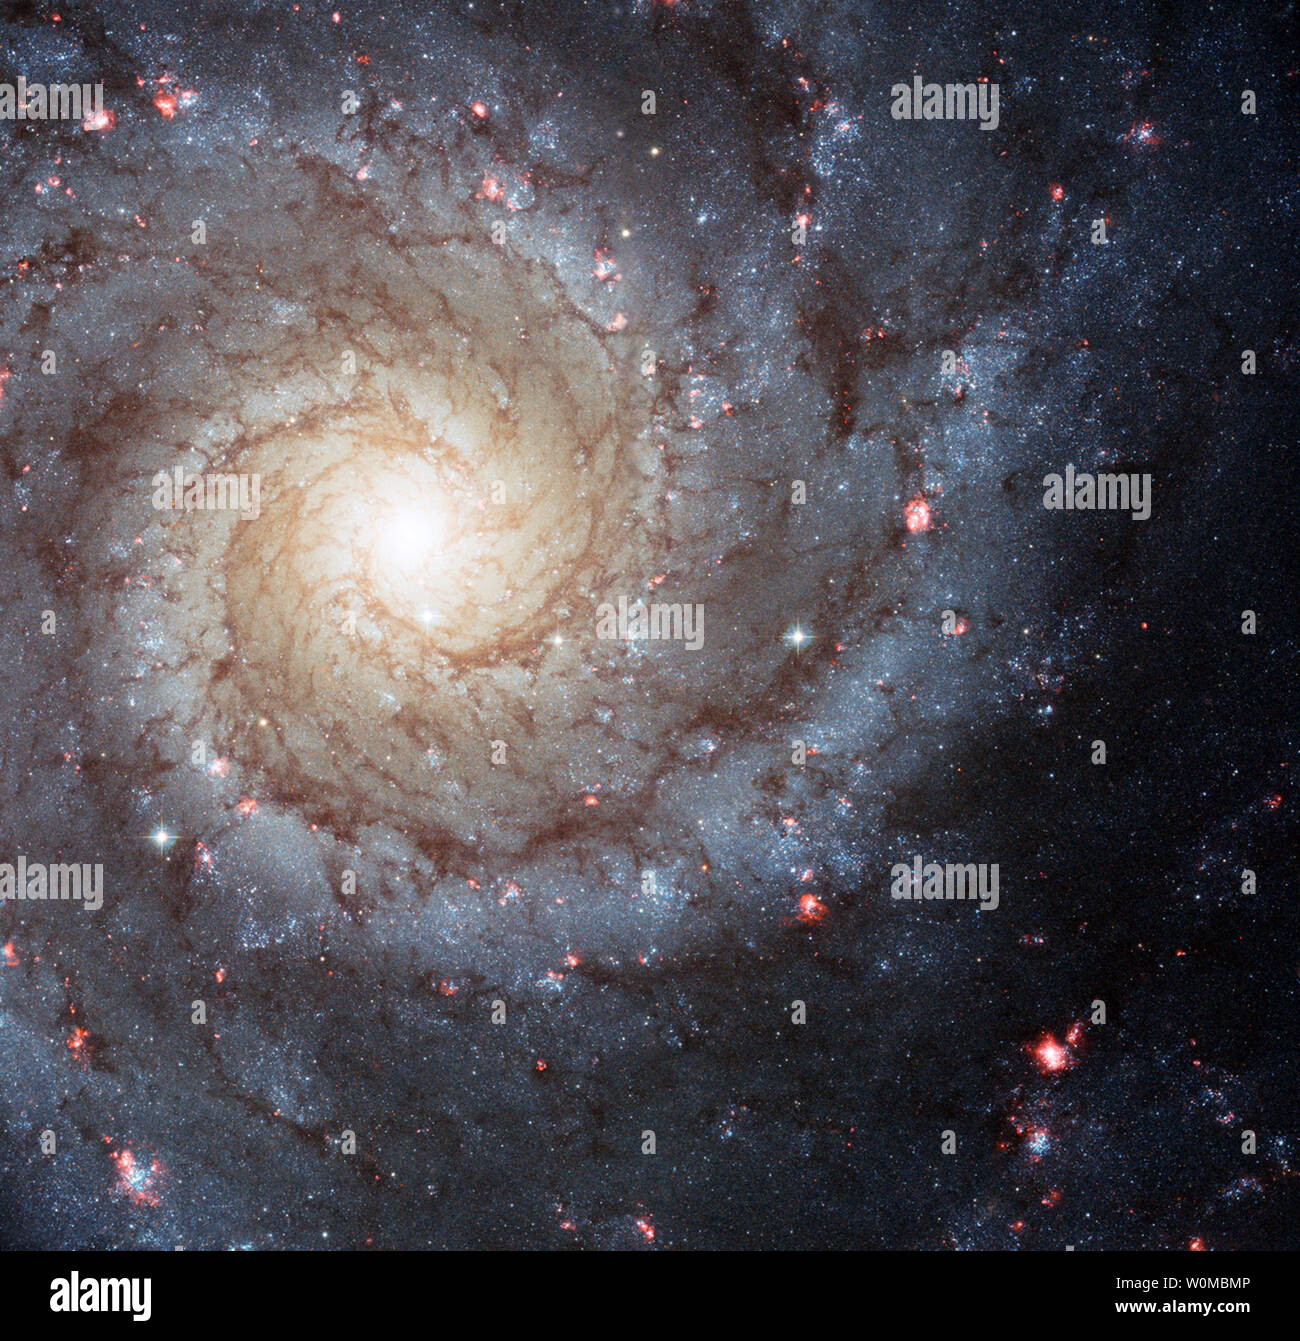 Galaxie spirale M74 est considérée dans ce télescope spatial Hubble image composite. Messier 74, également appelée NGC 628, qui est un merveilleux exemple d'un 'grand-design' galaxie spirale qui est considéré par les observateurs de la terre près de face. Sa parfaite symétrie des bras spiraux émanent du noyau central et sont parsemées de grappes de jeunes étoiles bleu et rose brillant de régions d'hydrogène ionisé (des atomes d'hydrogène qui ont perdu leurs électrons). M74 est située à environ 32 millions d'années-lumière dans la direction de la constellation des Poissons, le poisson. (Photo d'UPI/NASA/ESA/TVH) Banque D'Images